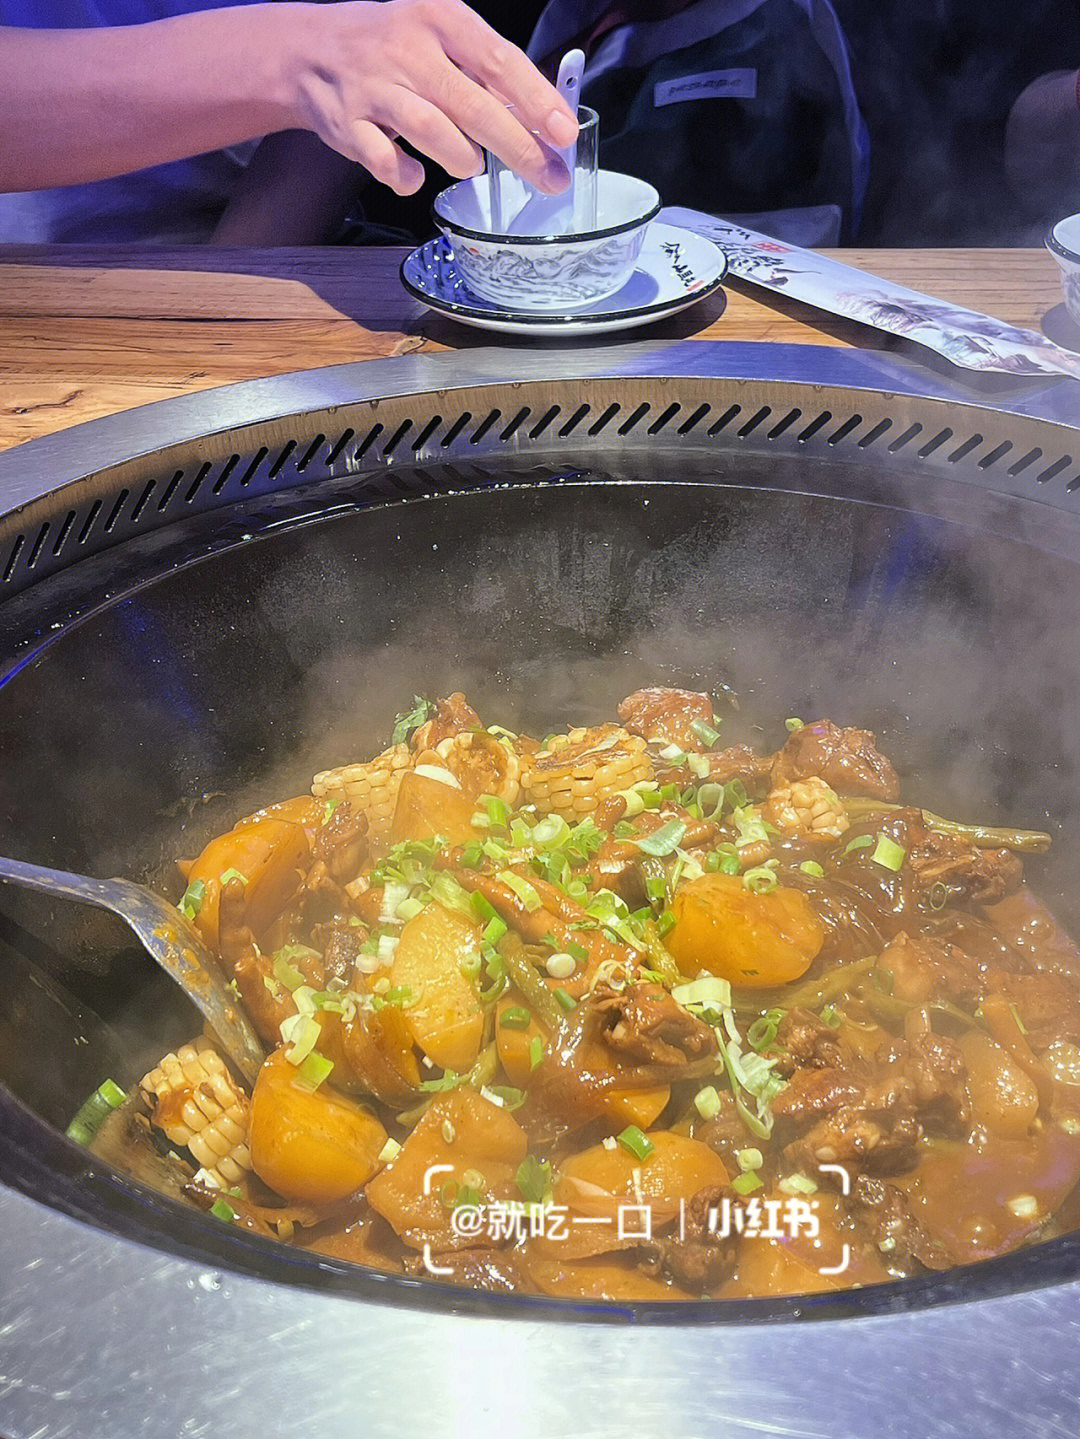 吃的是大鹅锅,这次想换一个口味尝试,这次吃的是排骨锅,里面有土豆